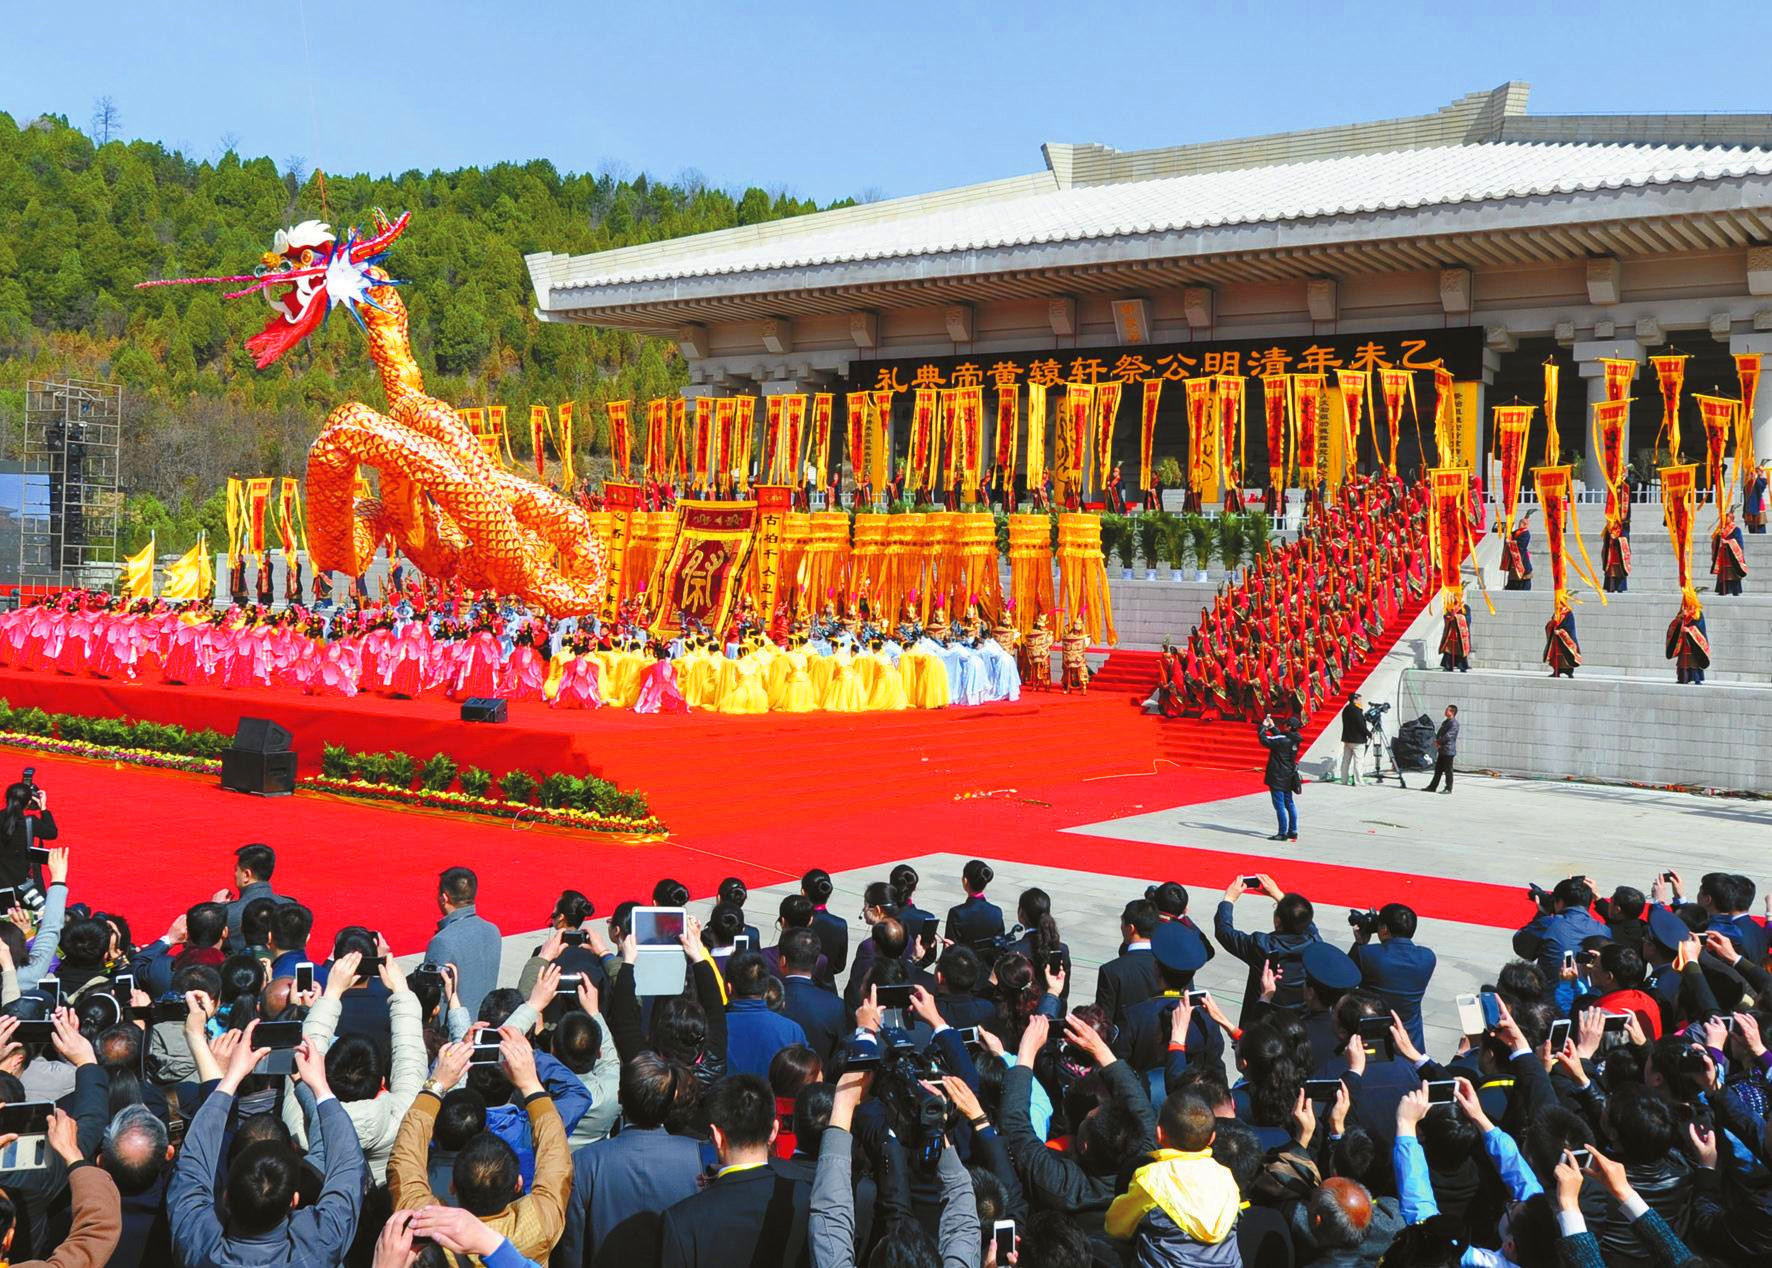 مهرجان تذكاري فى ضريح الامبراطور هوانغ بمناسبة عيد تشينغ مينغ في عام 2015